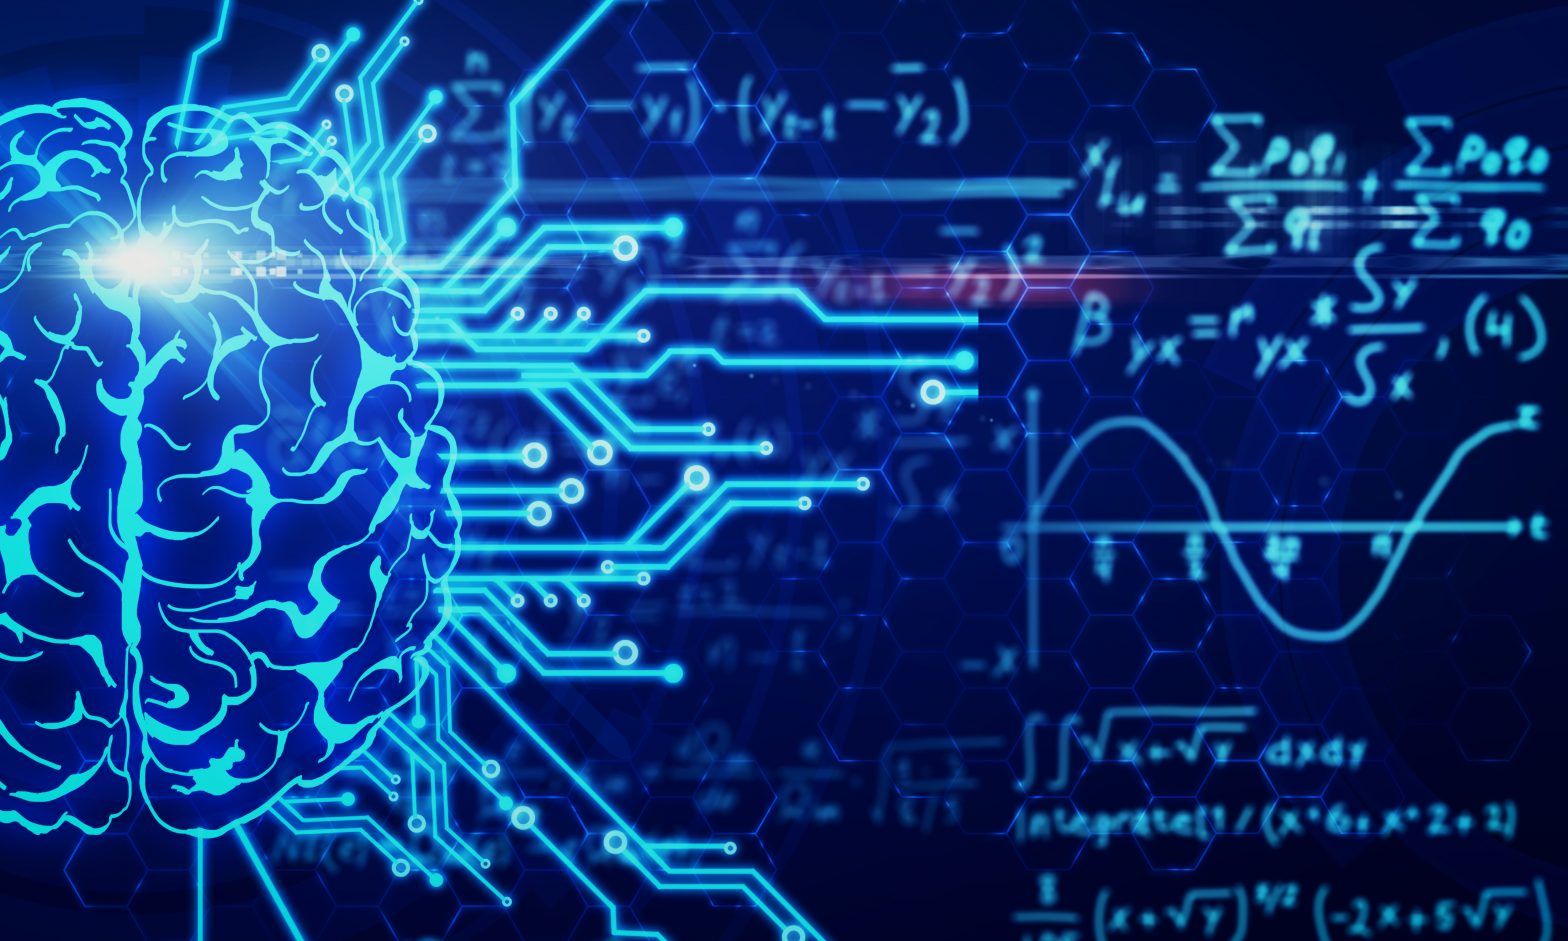 Schematica rappresentazione grafica di un cervello con circuiti e formule matematiche sfocate sullo sfondo, simboleggiando l'integrazione del Machine Learning e la matematica nella tecnologia AI